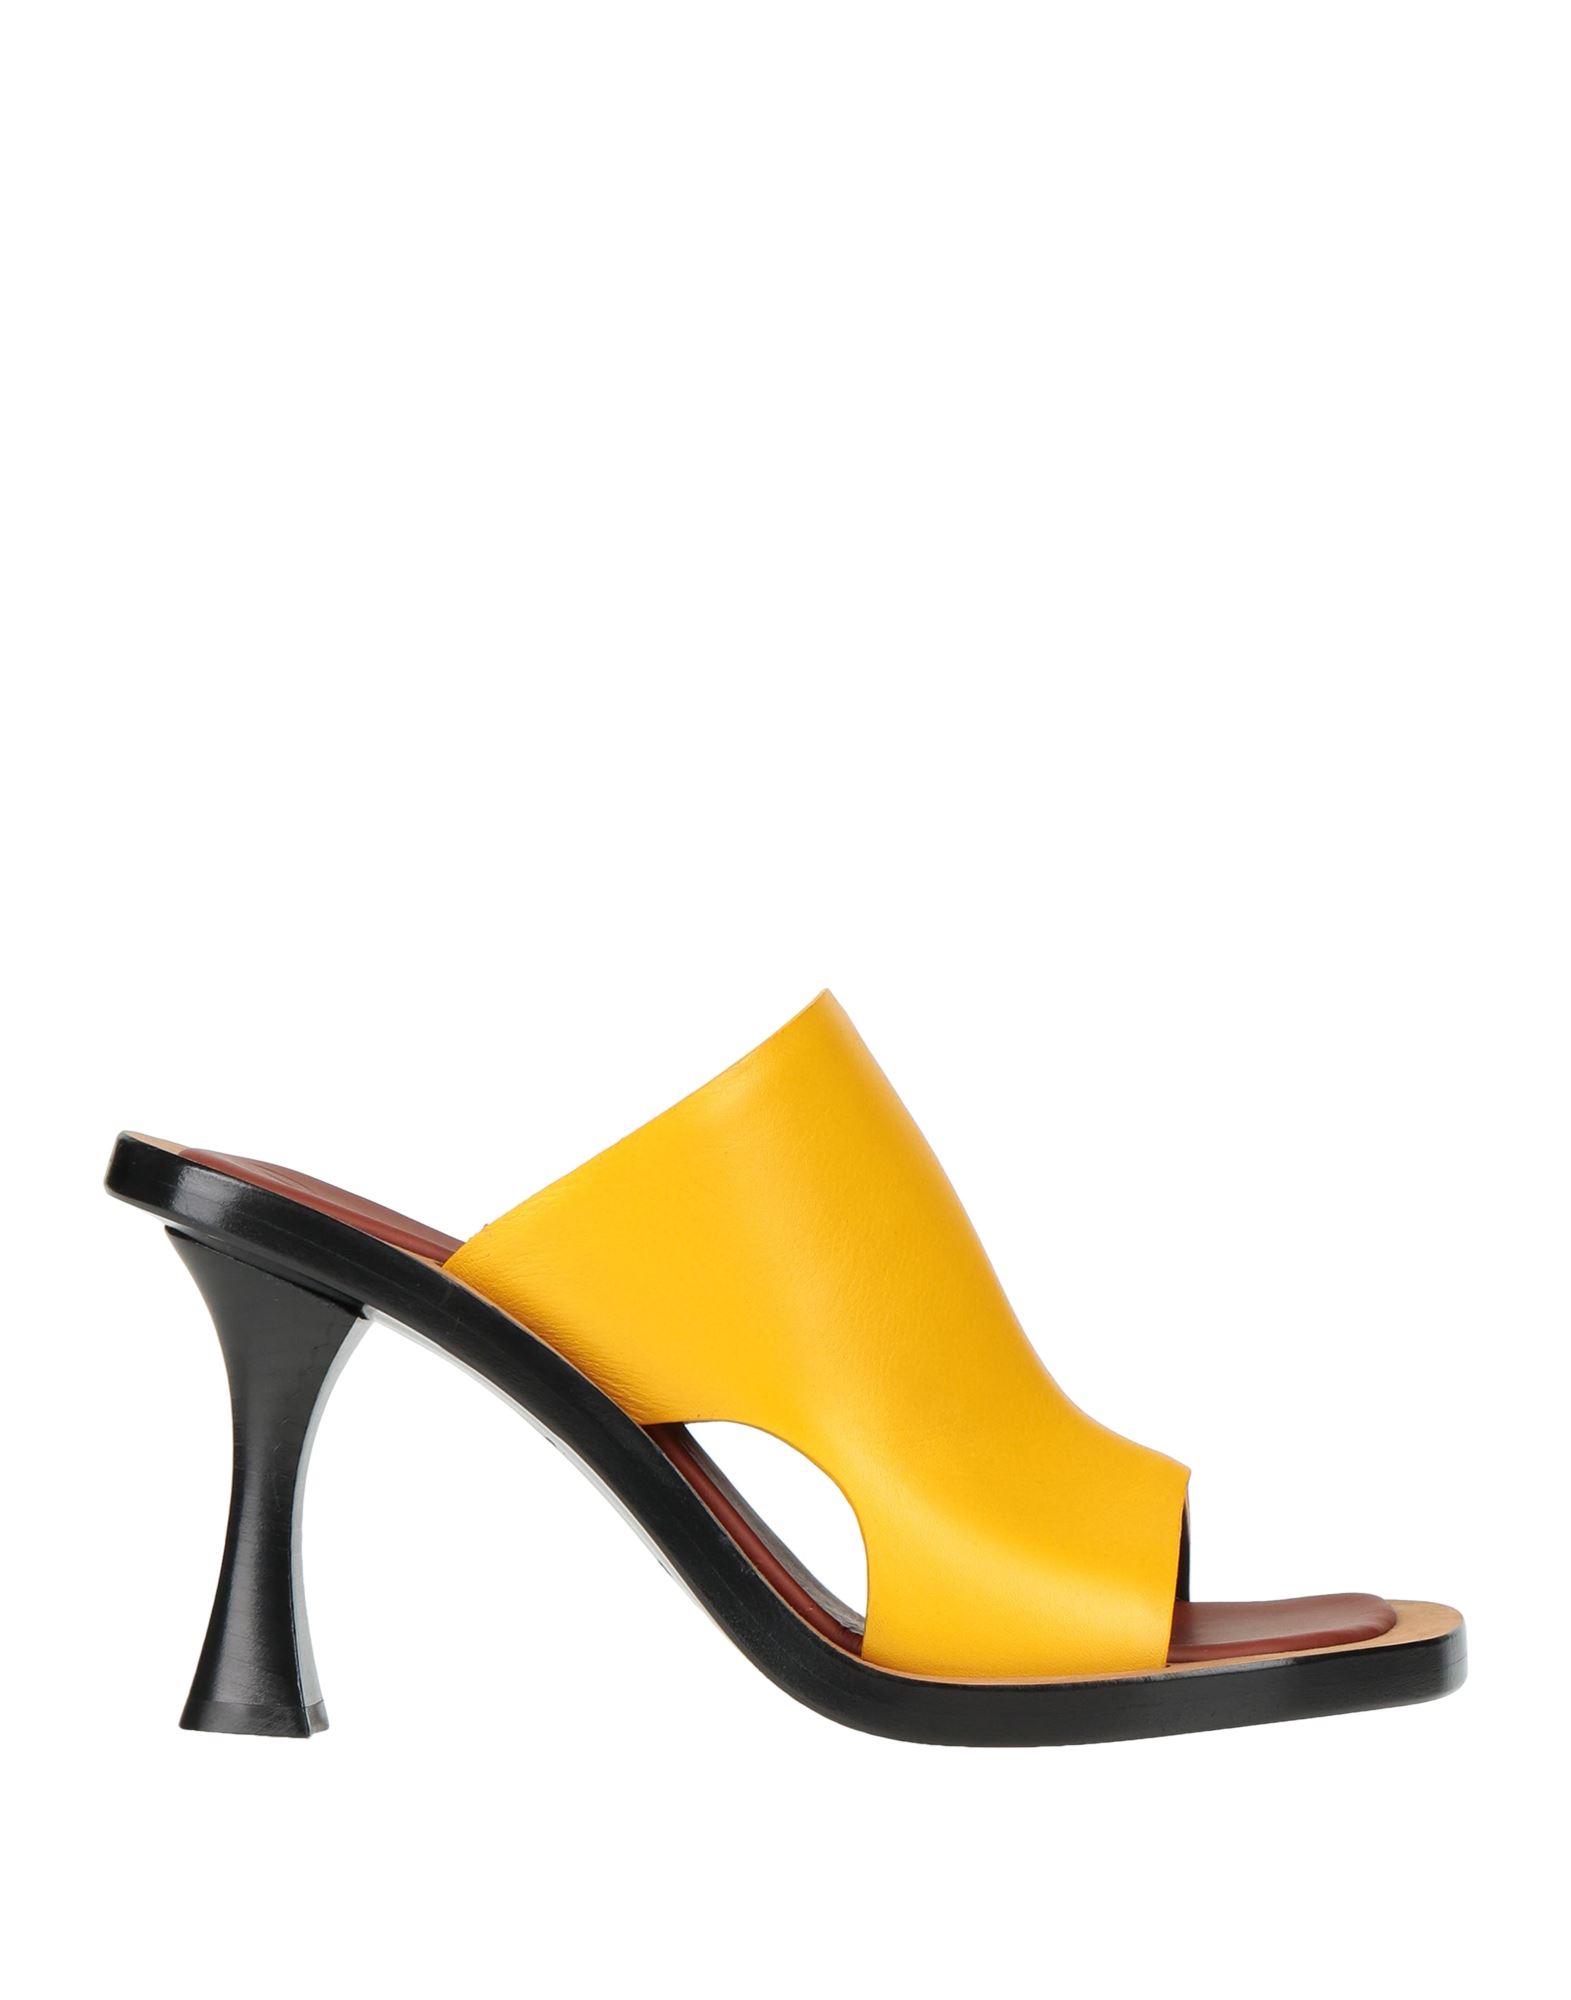 Proenza Schouler Sandals In Yellow